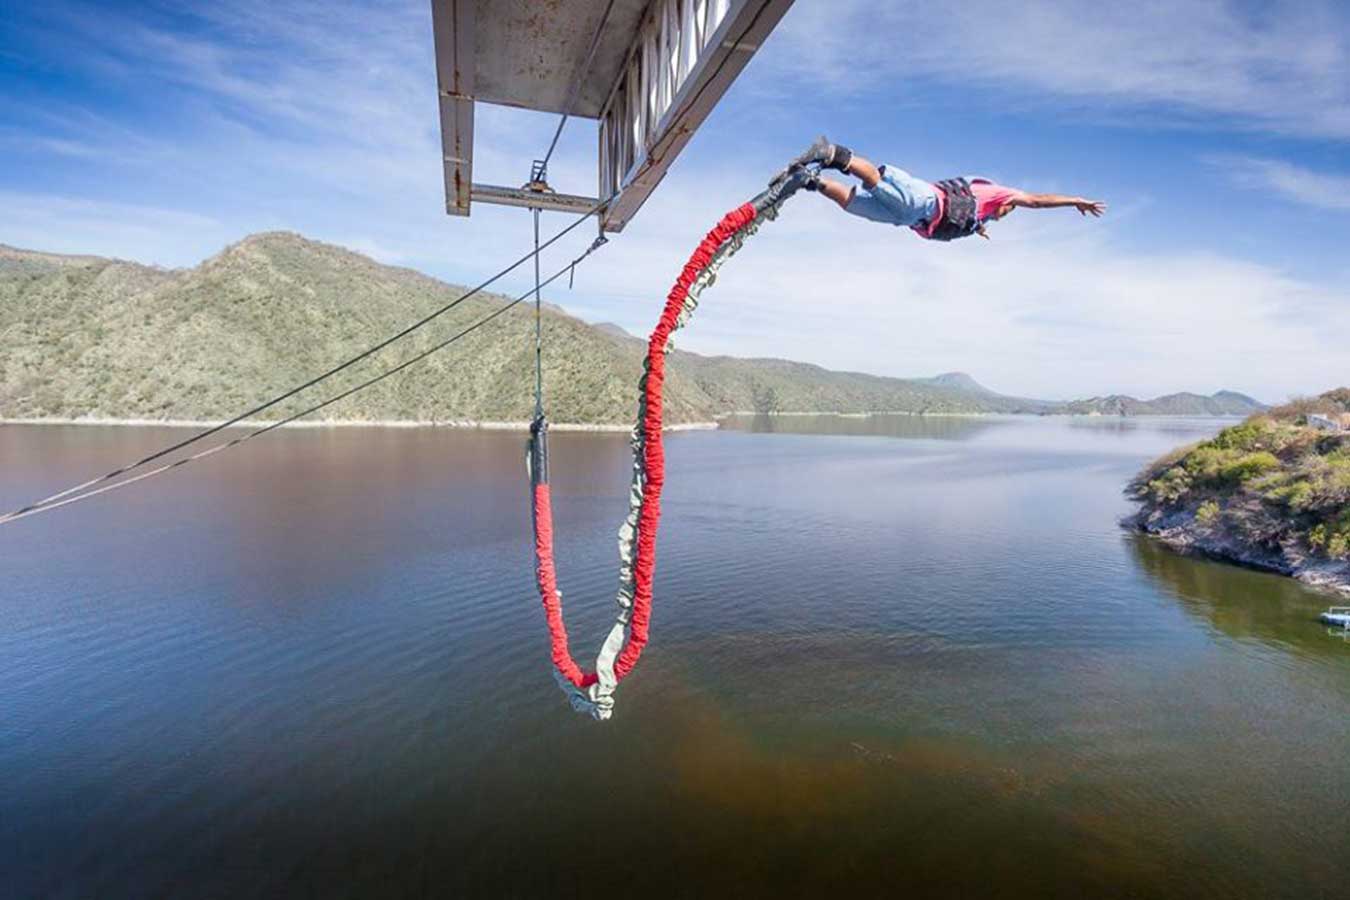 Te animás al bungee jumping? | Descubrir Turismo